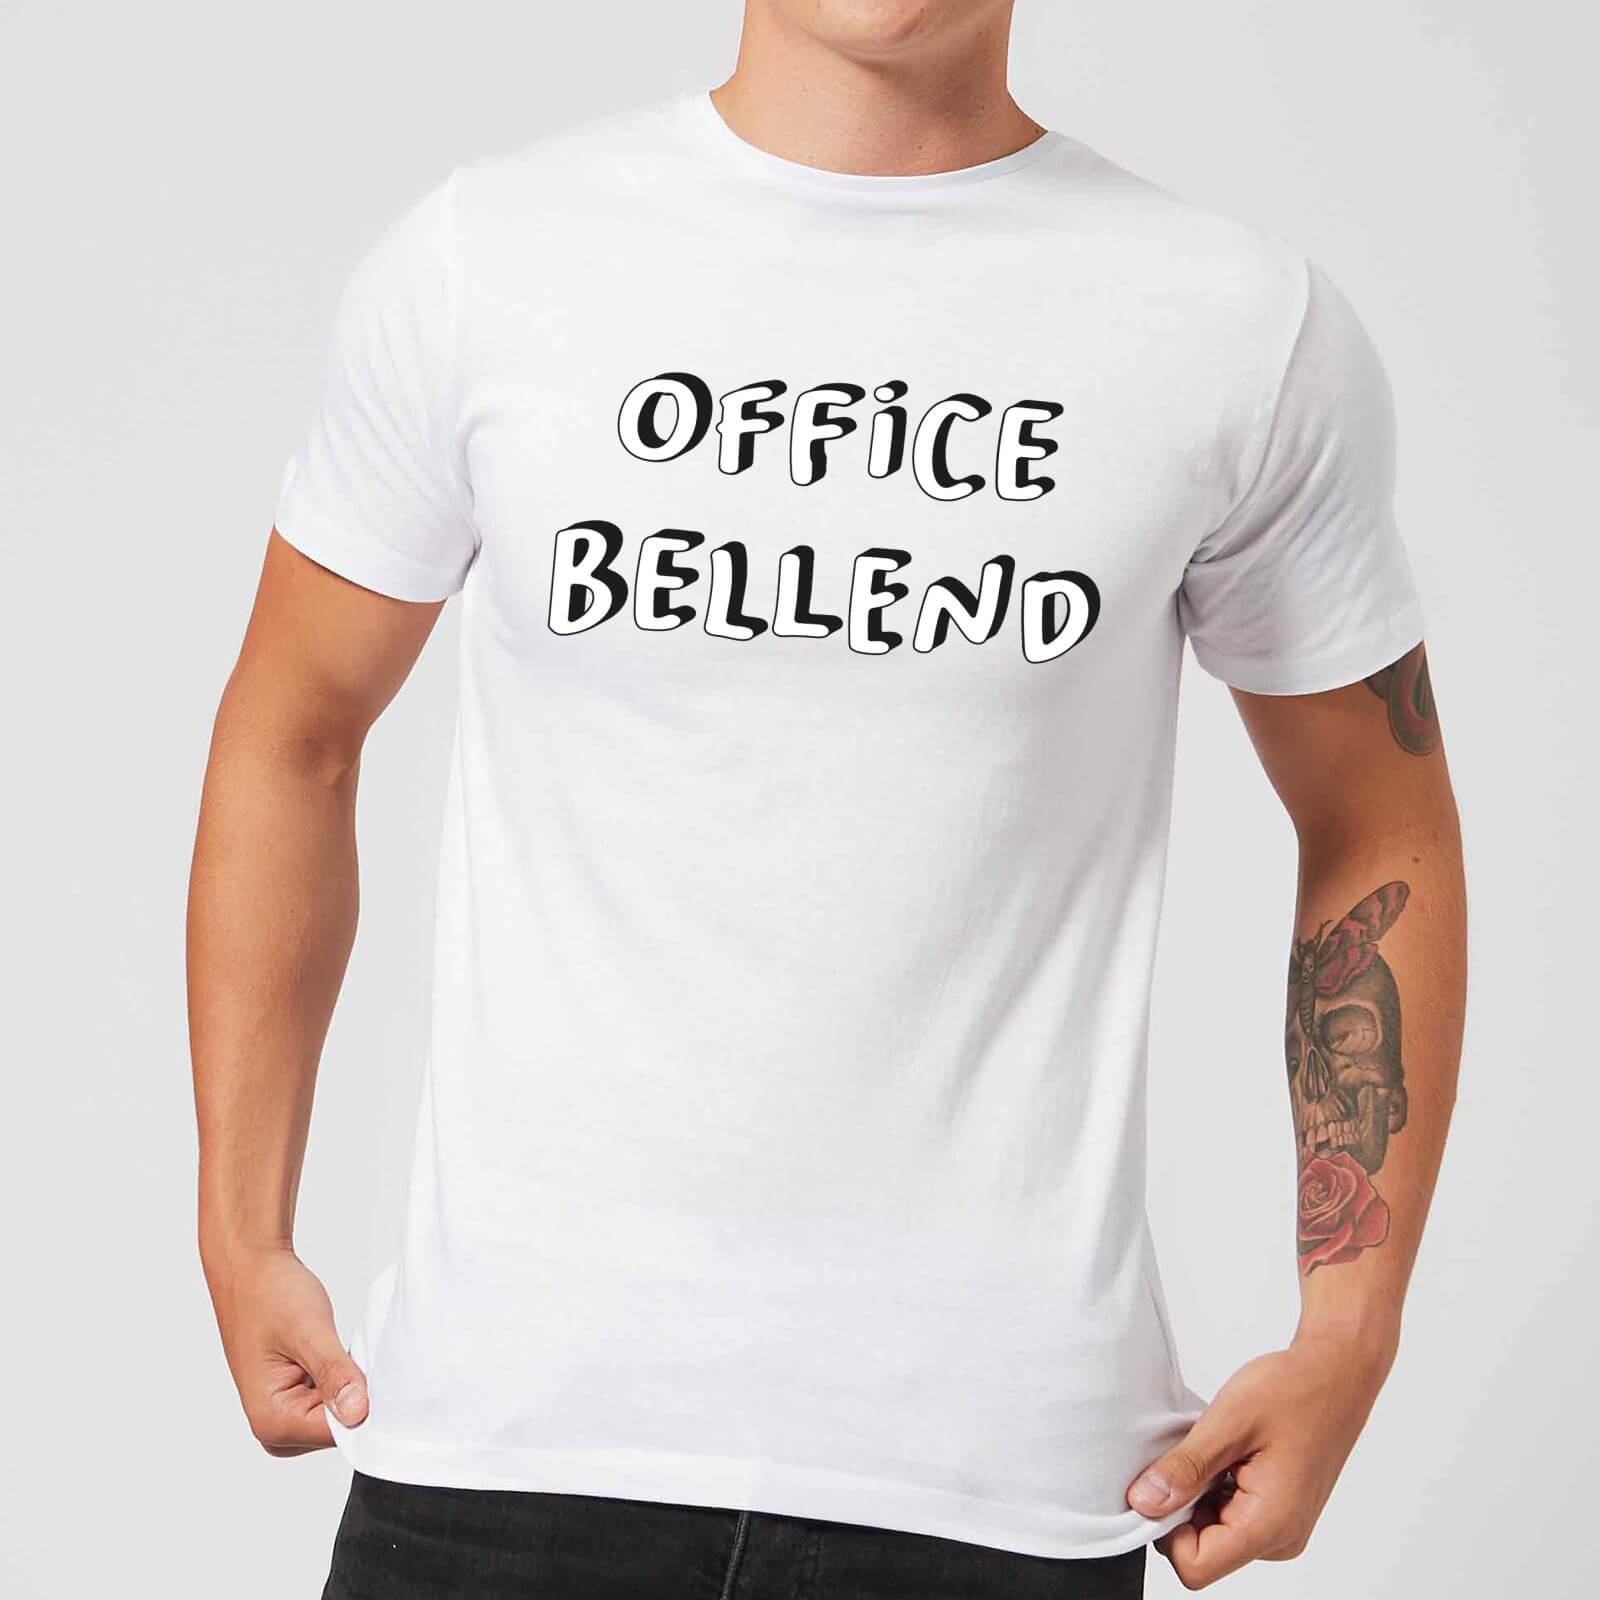 Office Bellend Men's T-Shirt - White - S - White